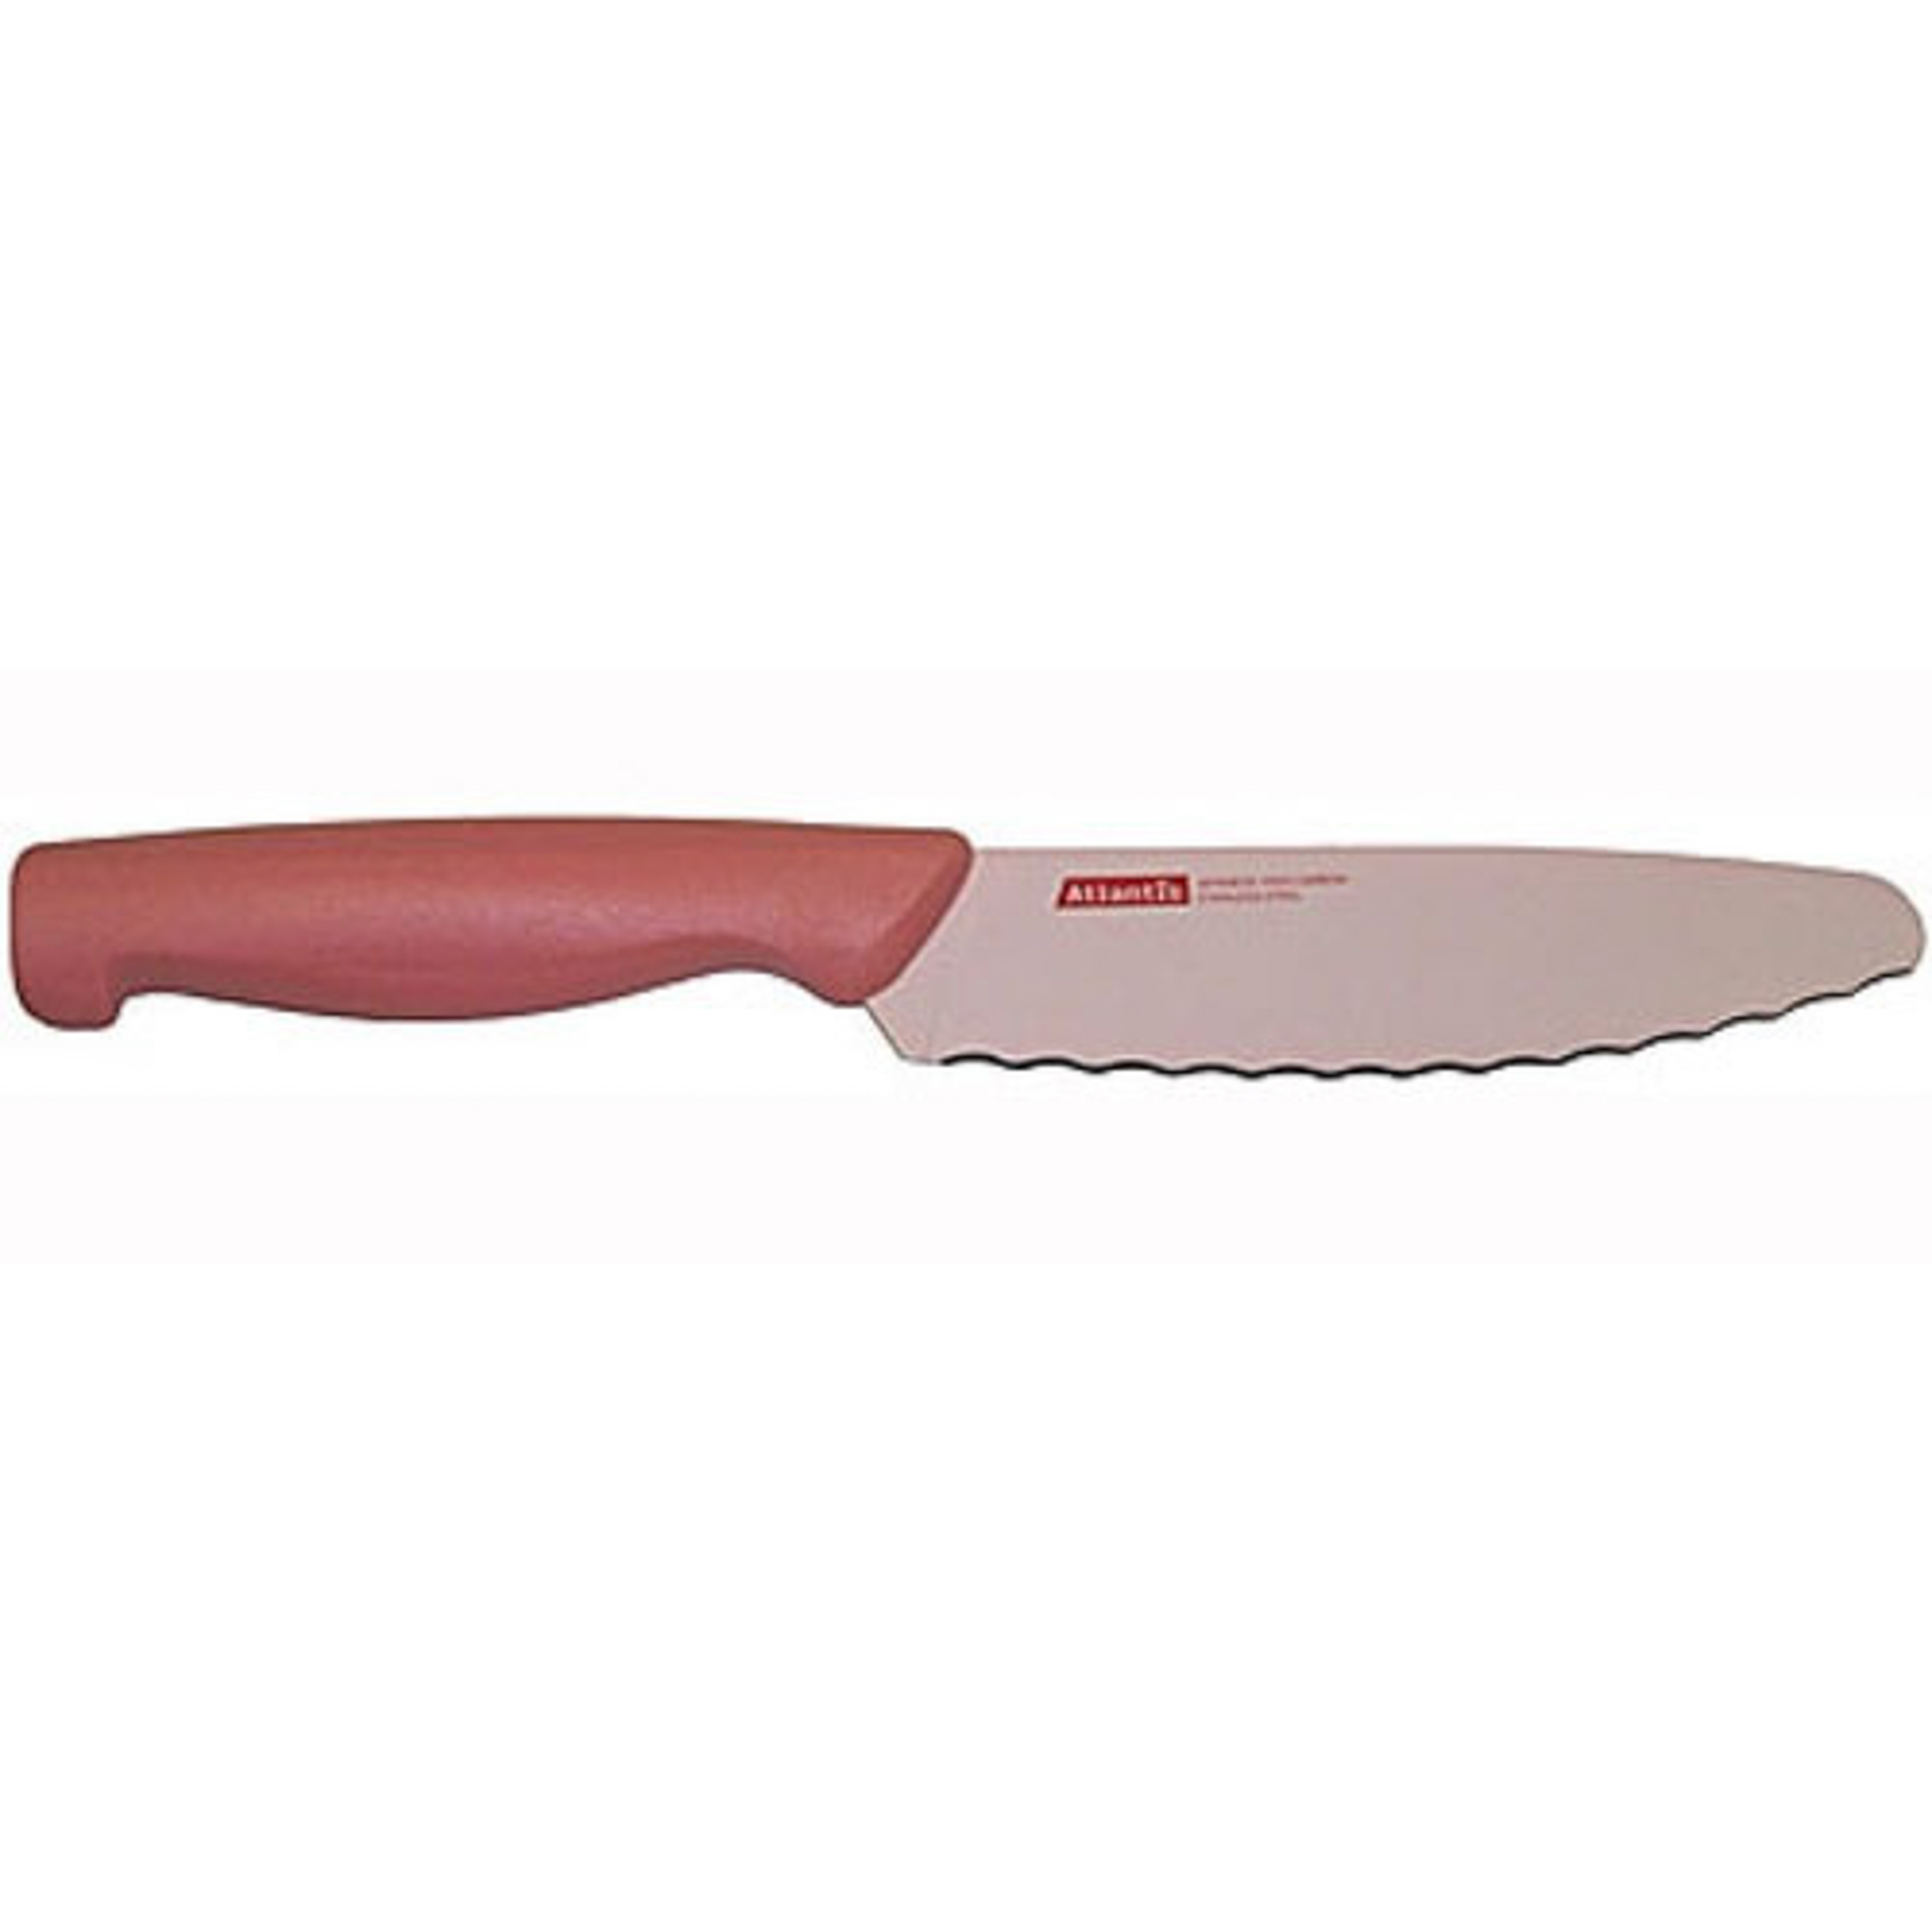 Нож универсальный 15см розовый Atlantis нож кухонный универсальный зевс 24316 sk atlantis